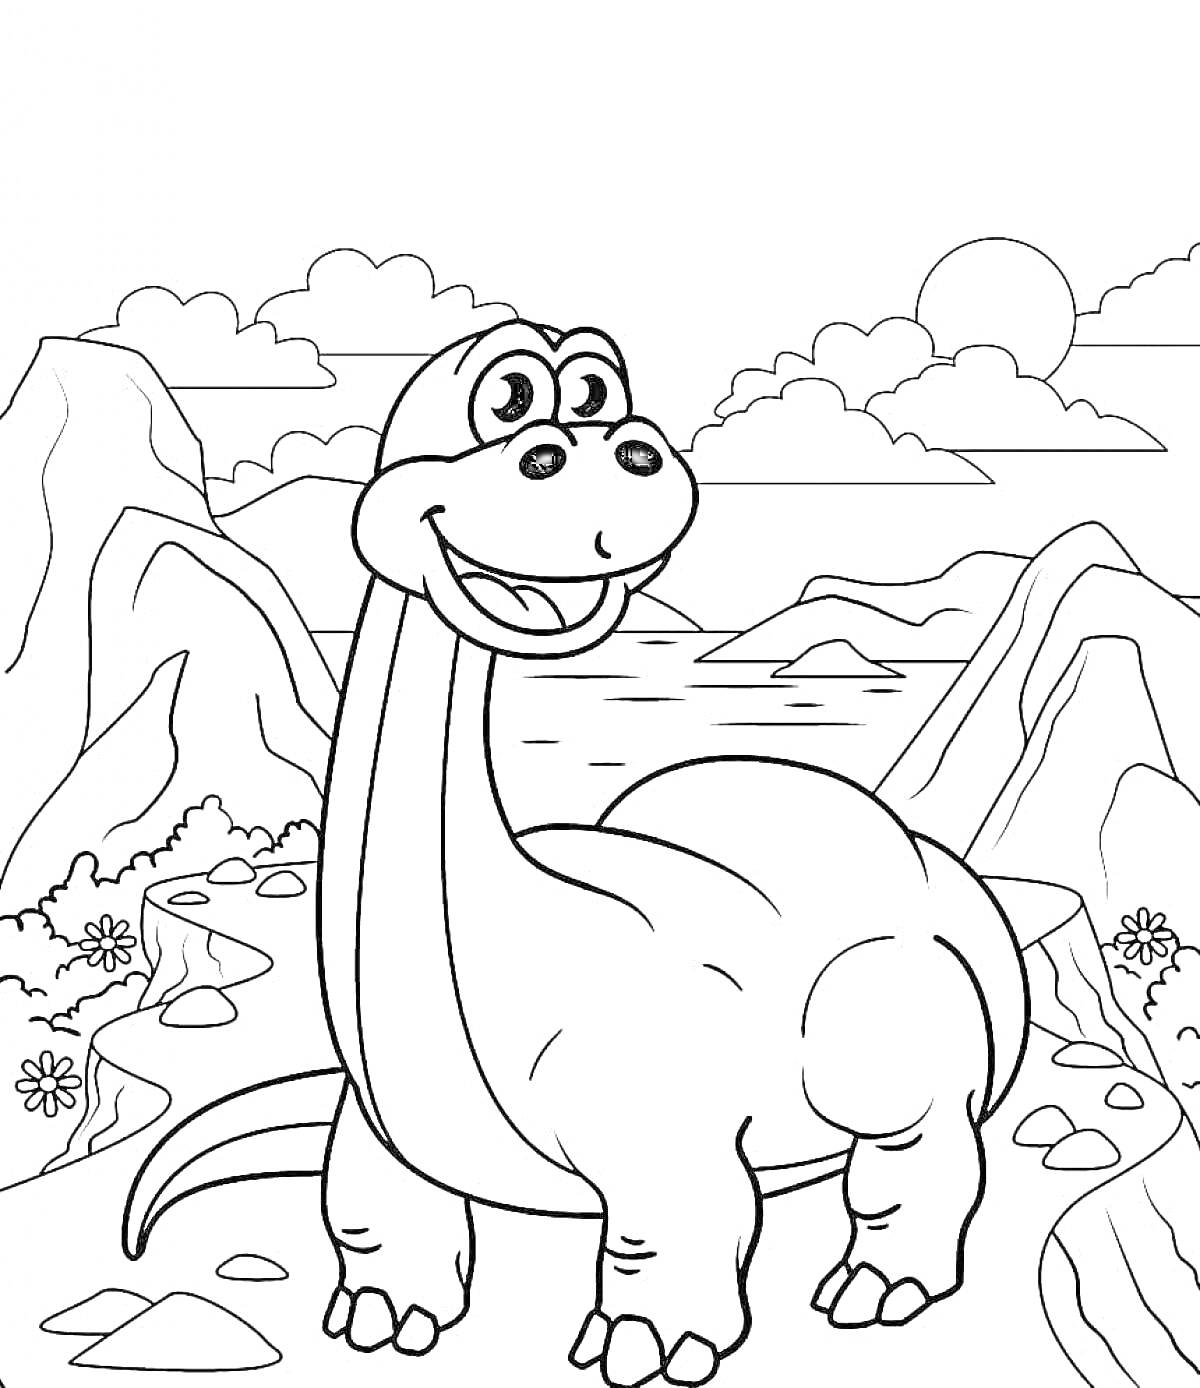 Раскраска улыбающийся динозавр в горах с озером и цветами на переднем плане